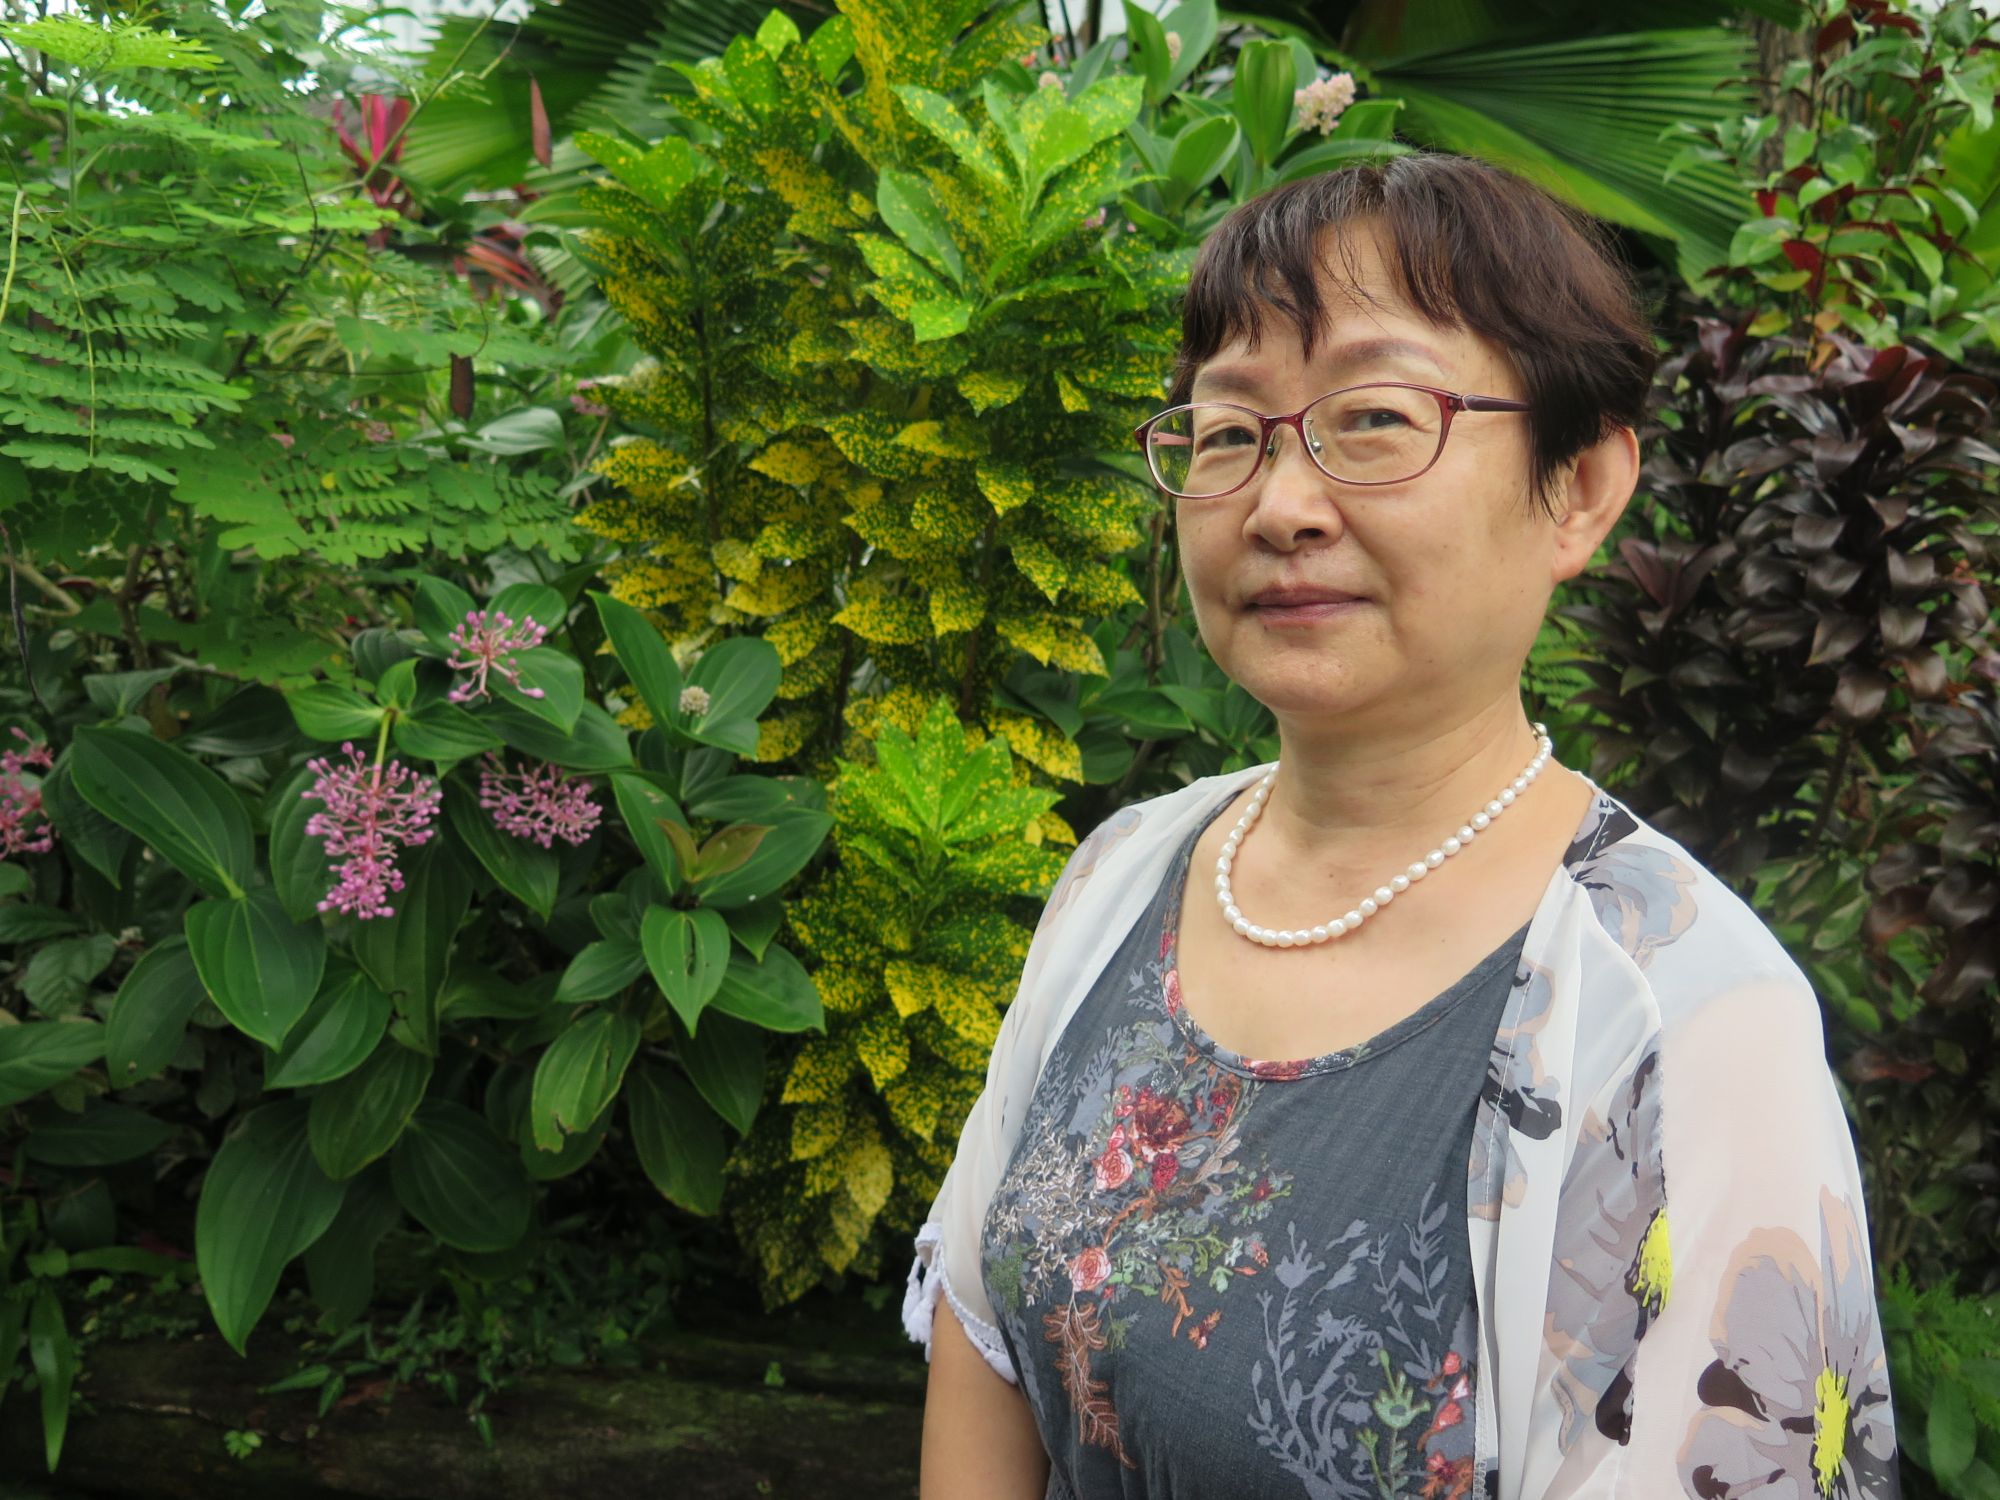 Ms Mei Lirong